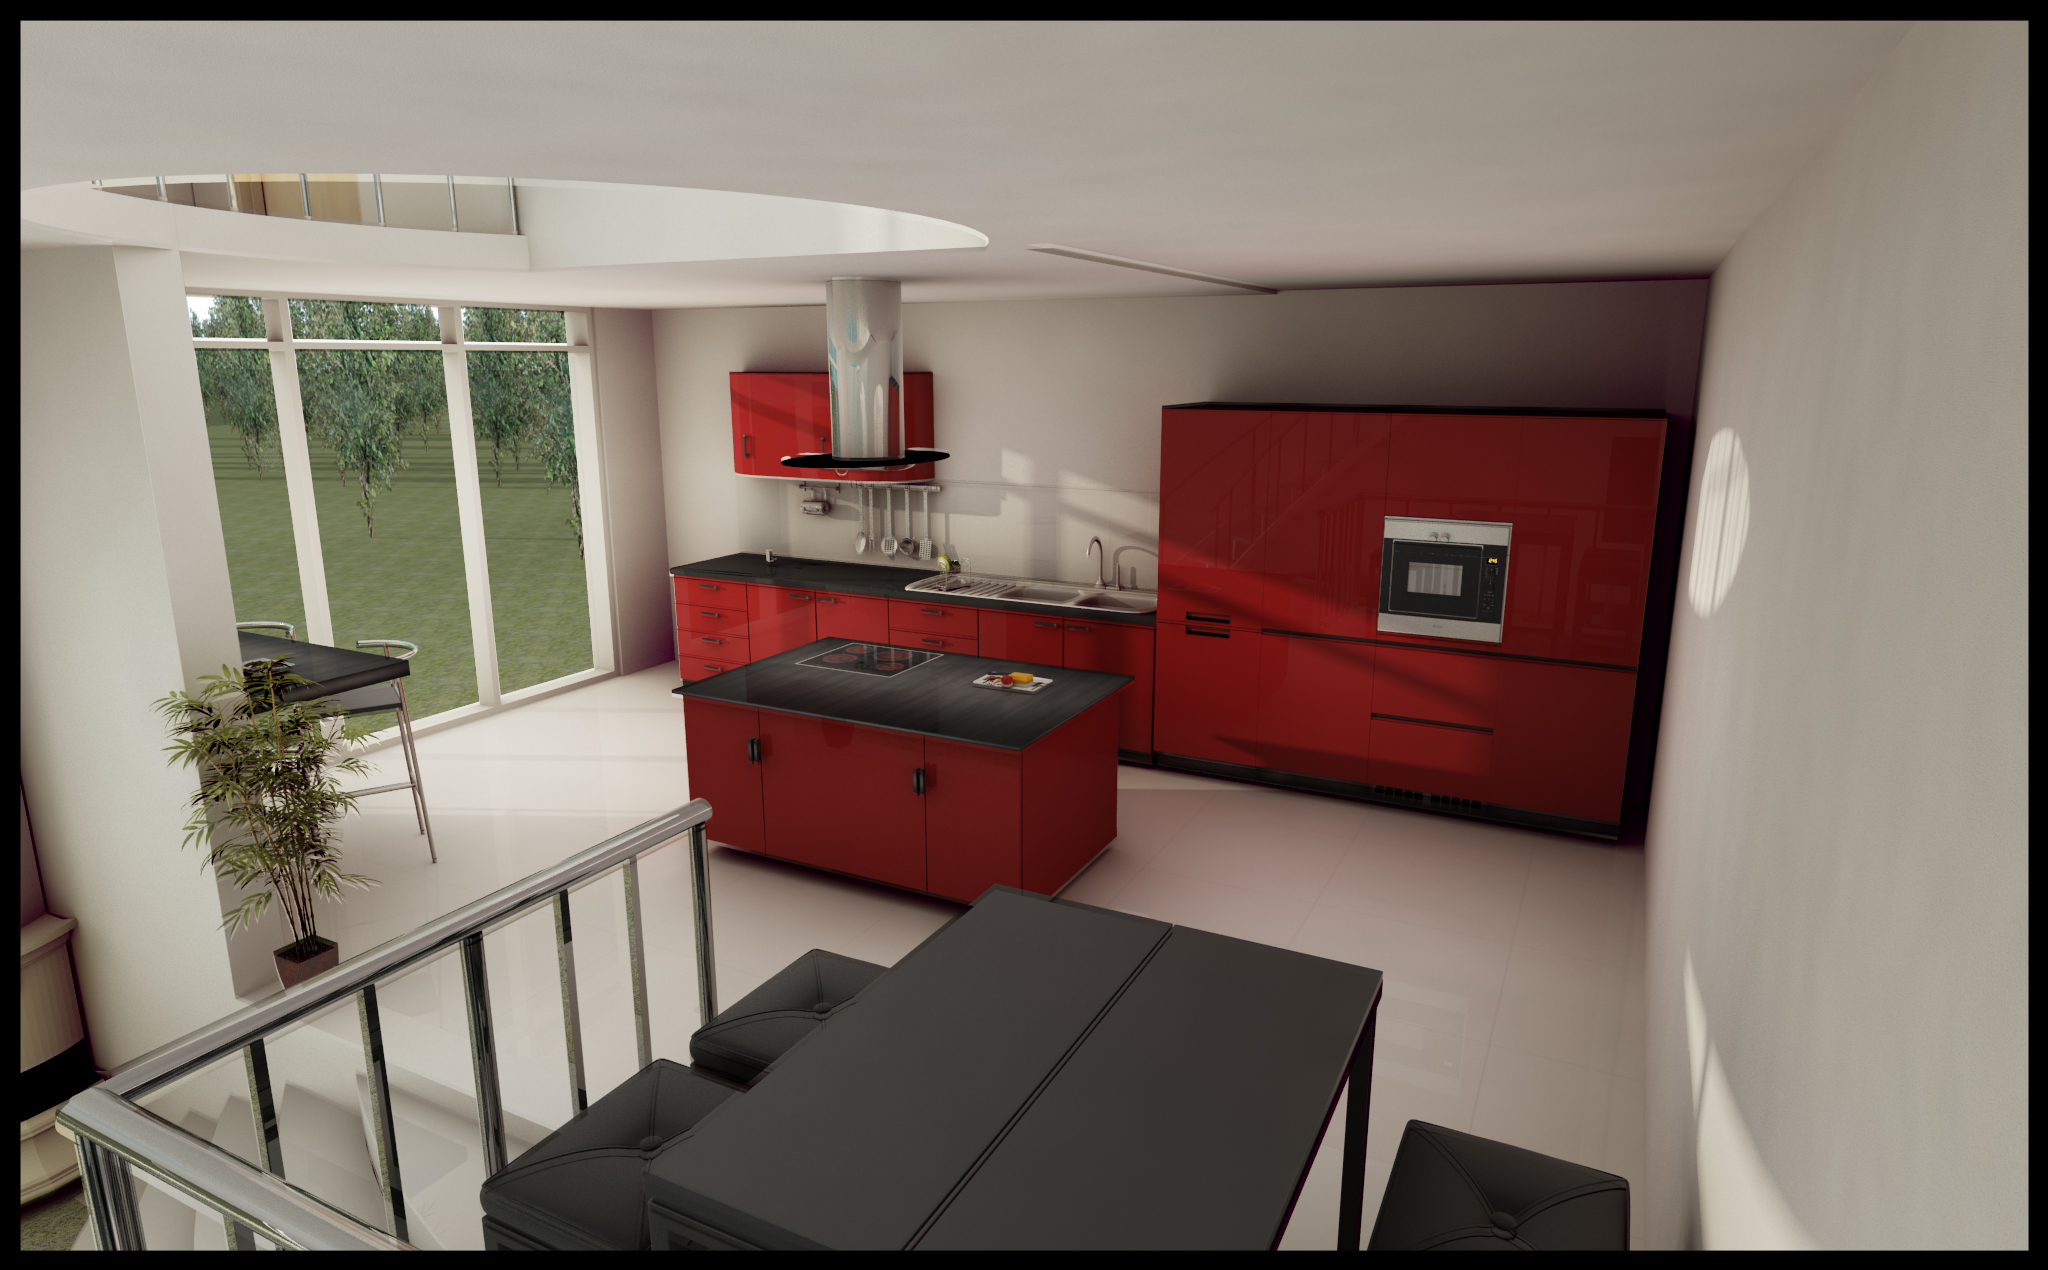 Red Kitchen design by DragoDraz on DeviantArt